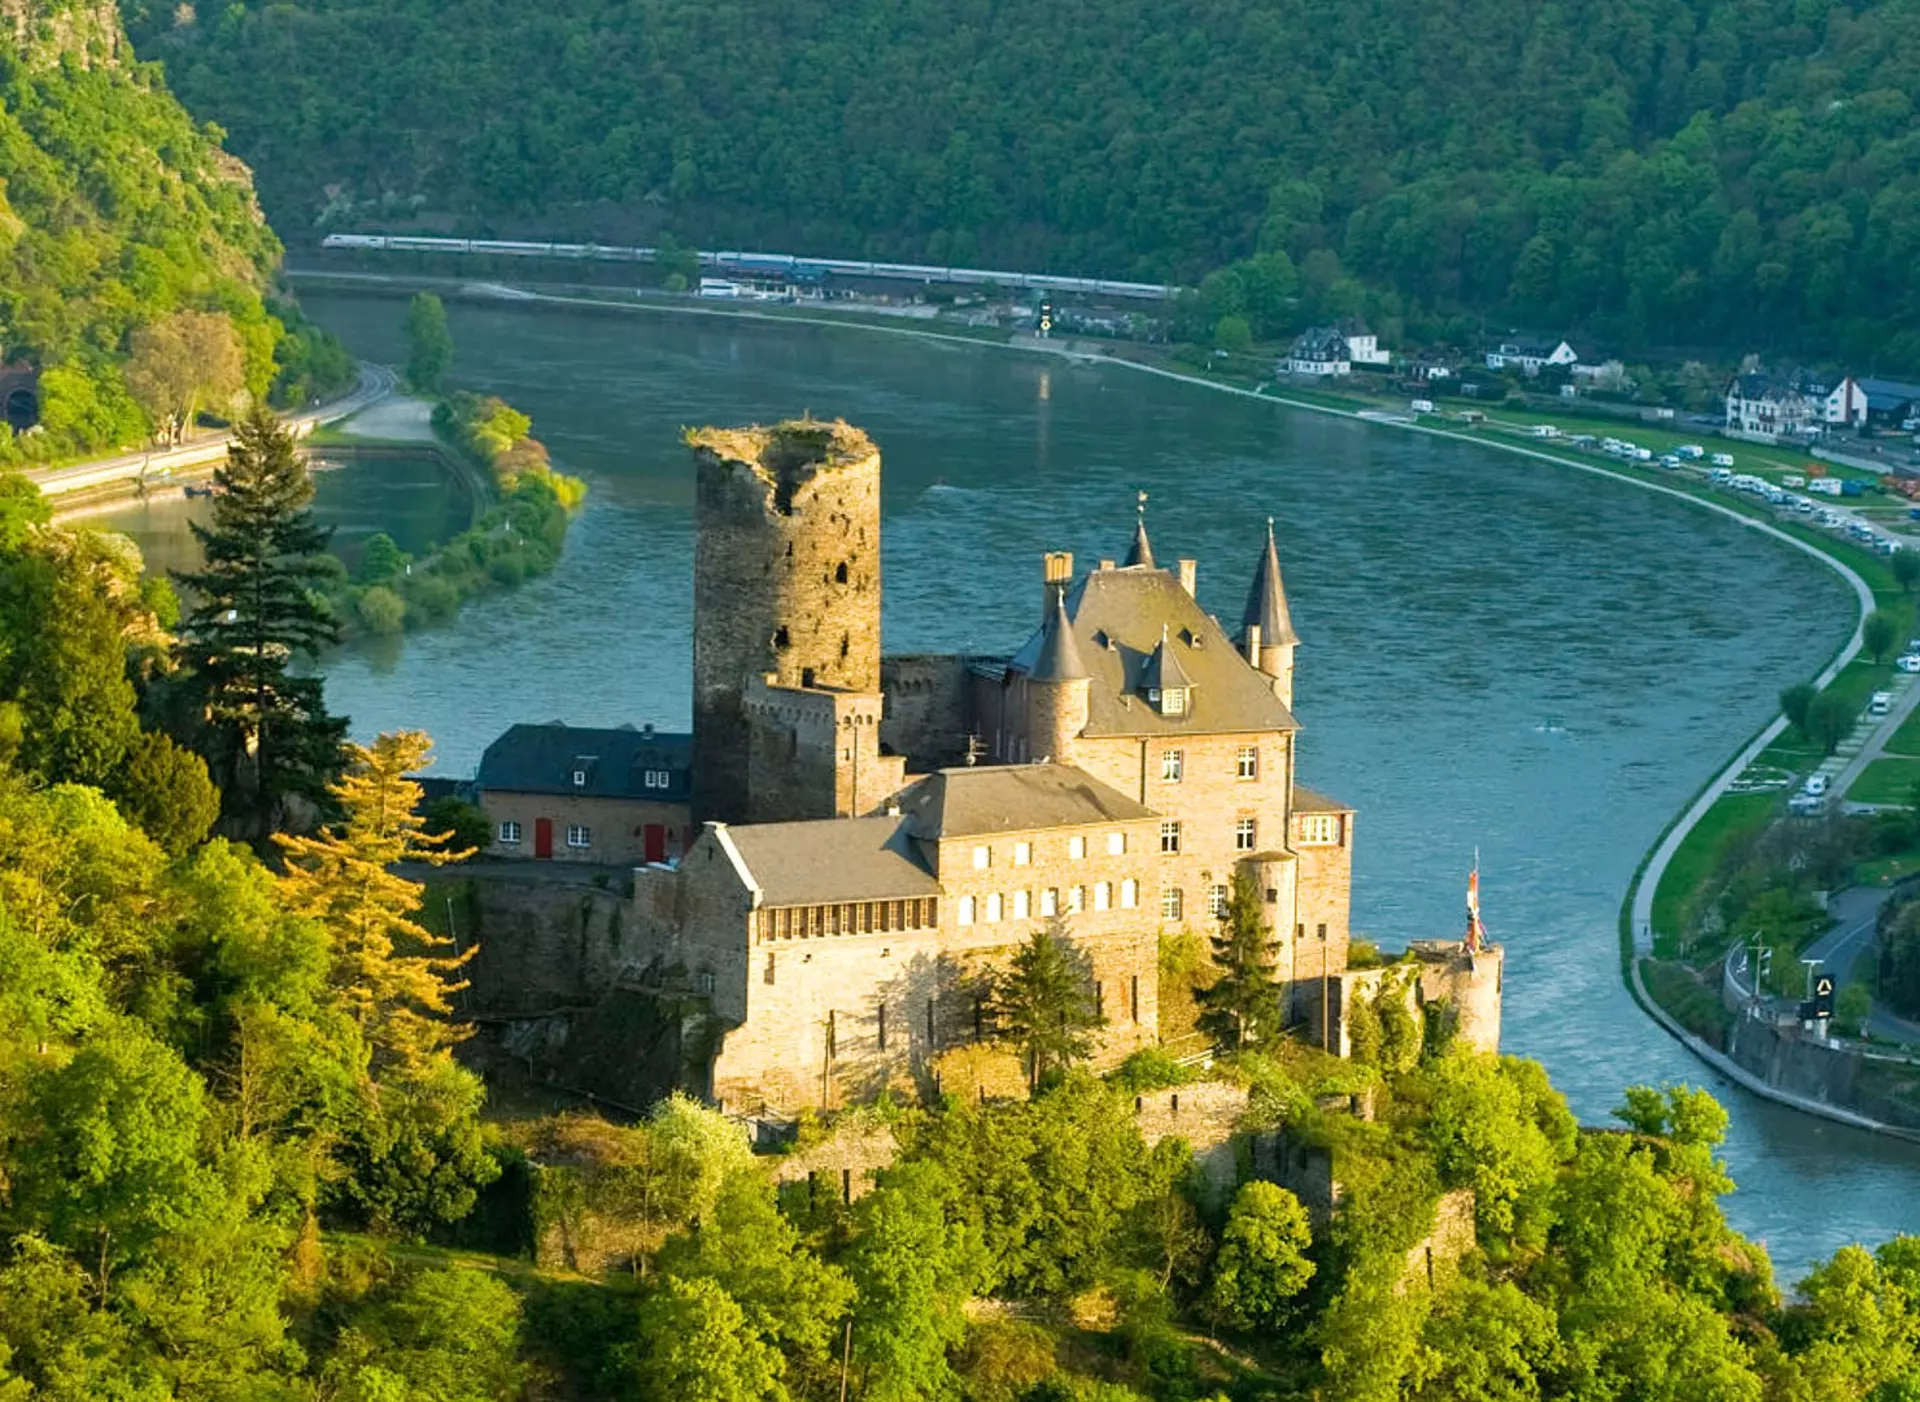 im Urlaub auf dem Weingut am Mittelrhein auf dem Rheinsteig zur Burg Katz wandern und den Ausblick genießen